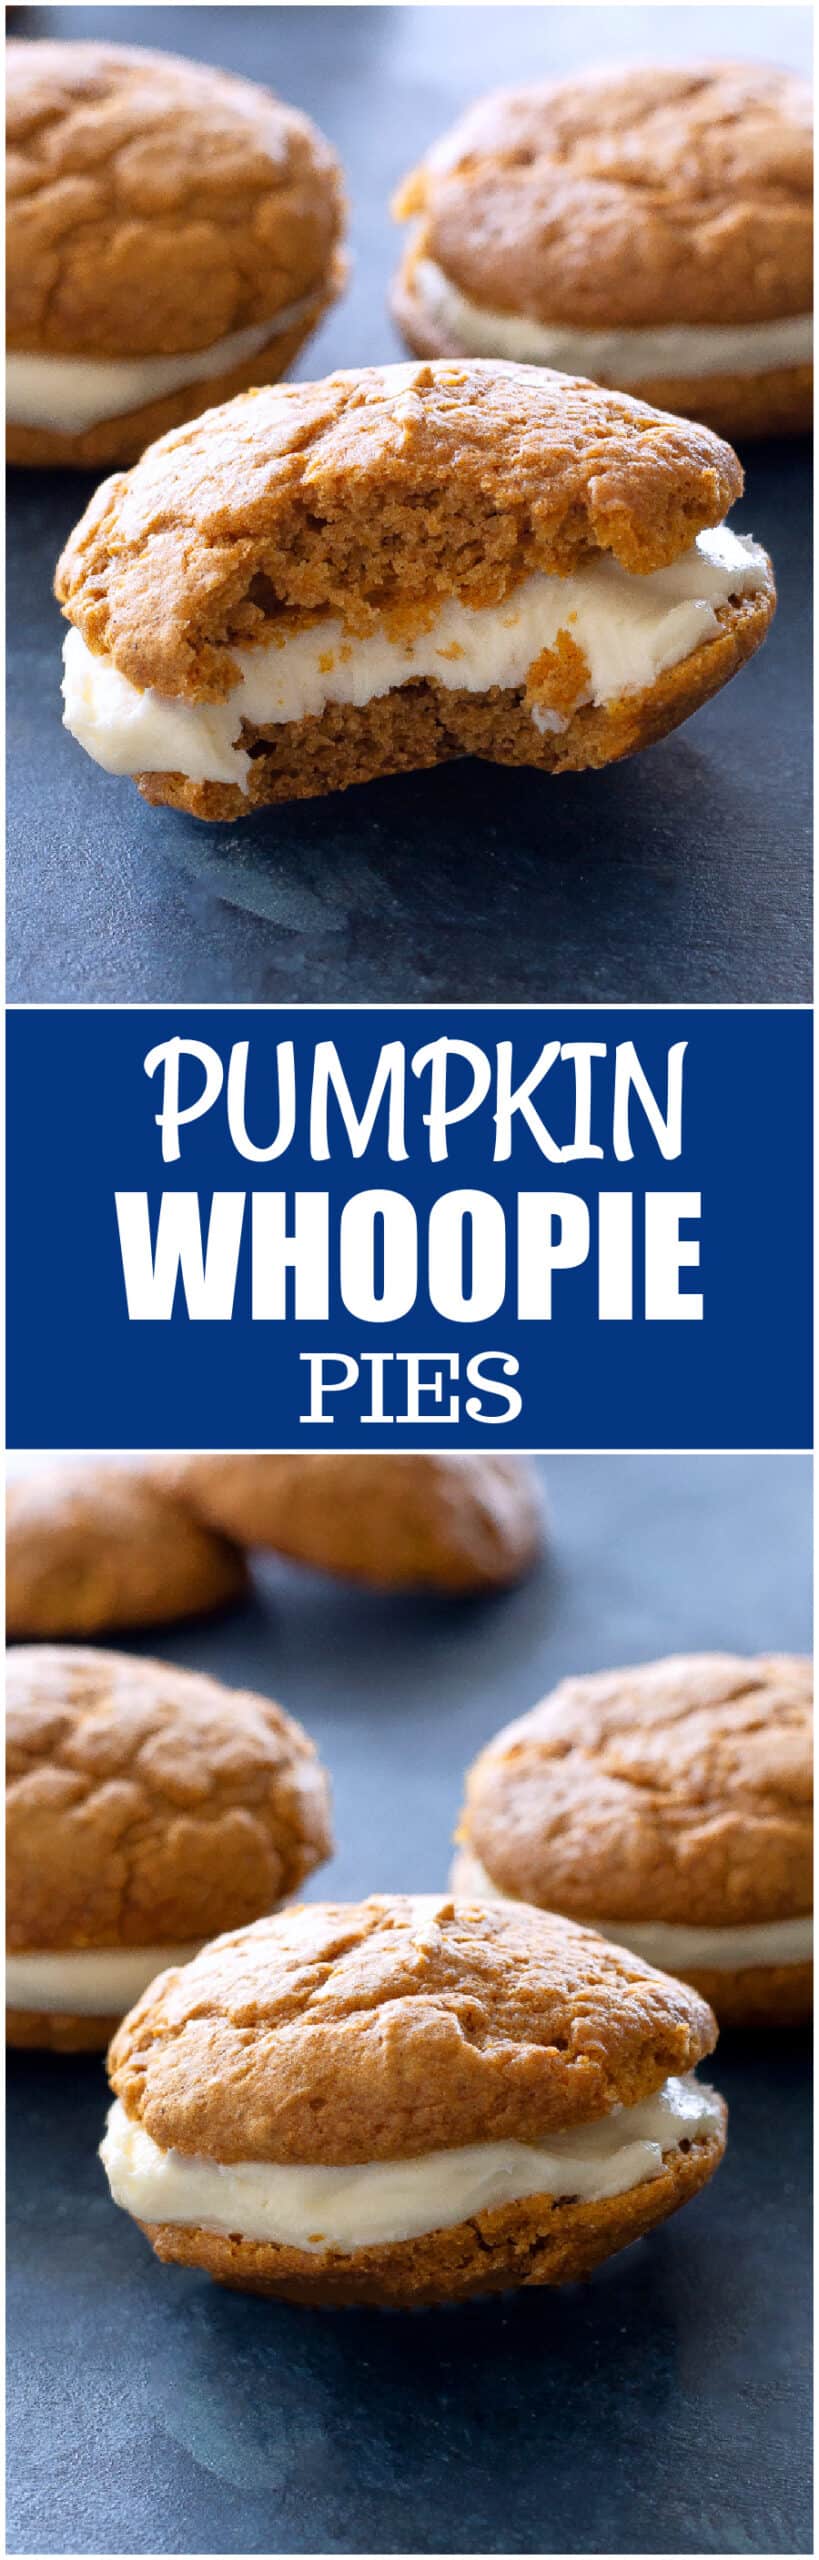 pumpkin whoopie pies scaled - Pumpkin Whoopie Pies